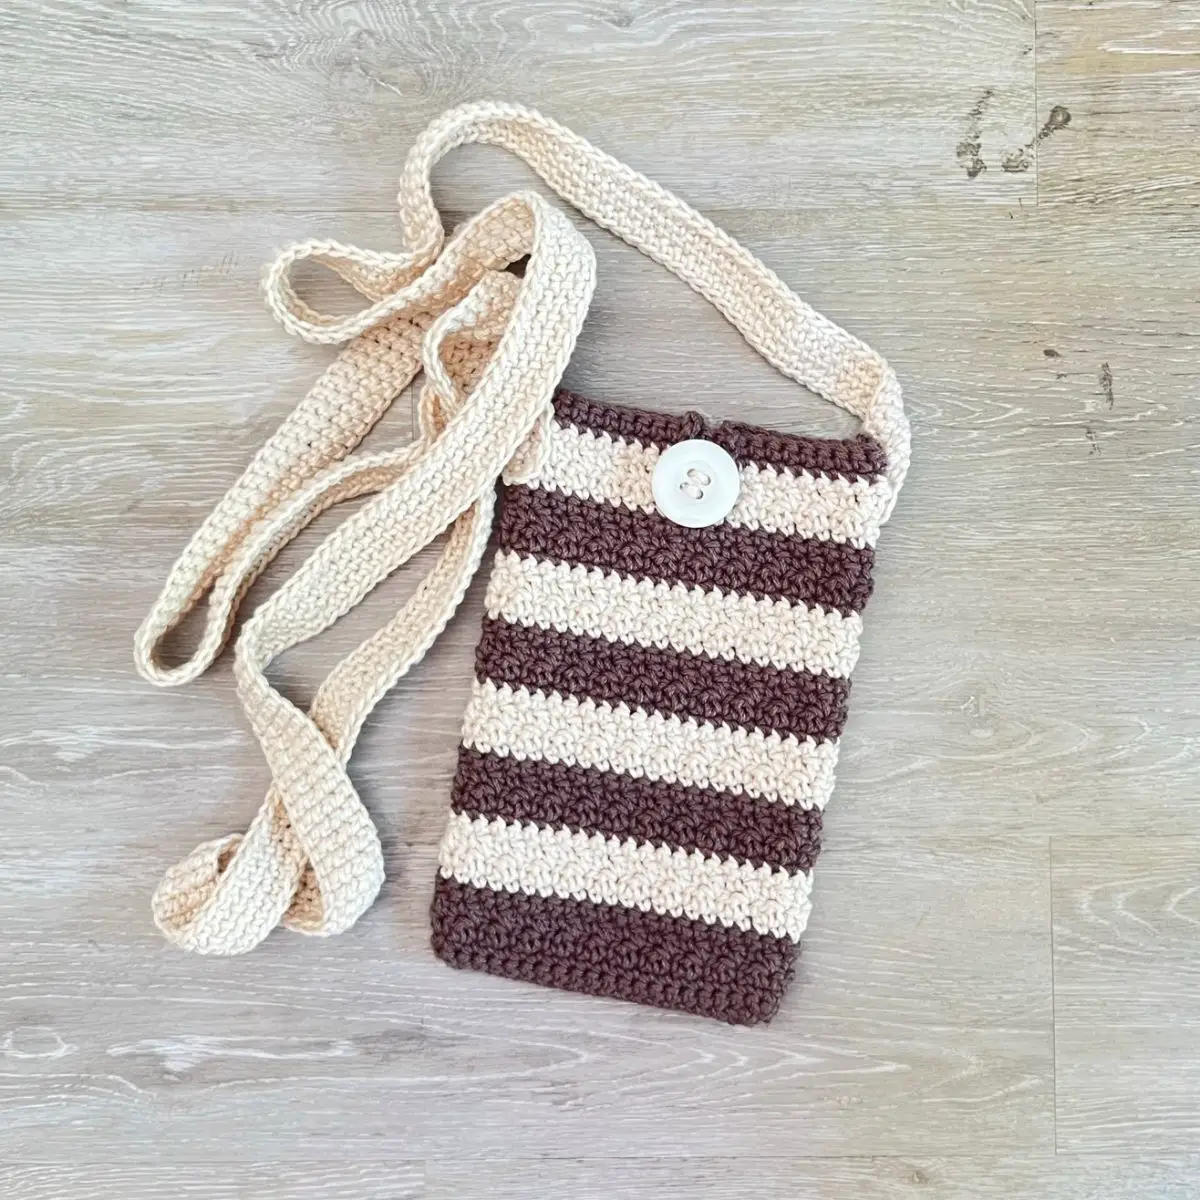 Winter Hills Cellphone Bag – Free Crochet Pattern